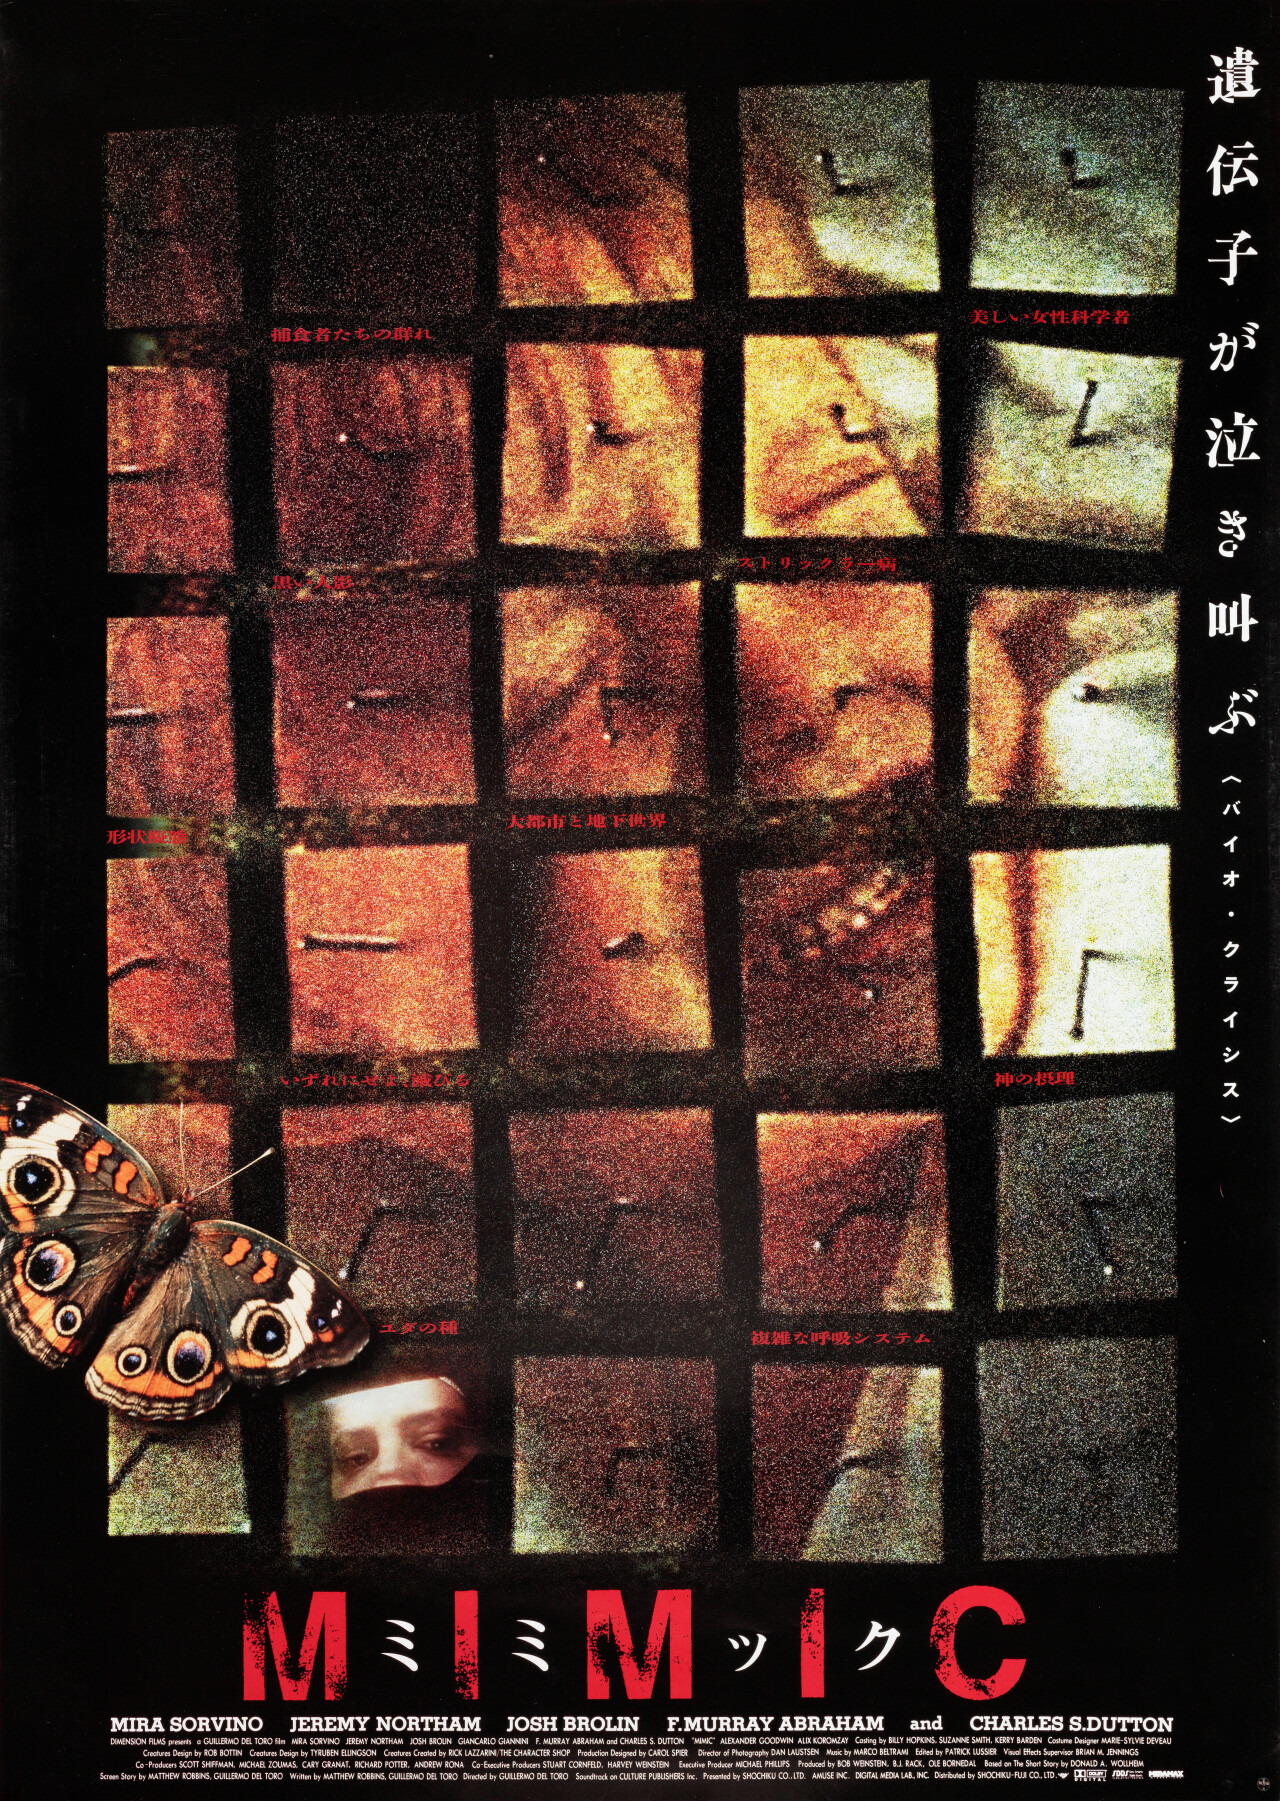 Мутанты (Mimic, 1997), режиссёр Гильермо дель Торо, японский постер к фильму (ужасы, 1997 год)